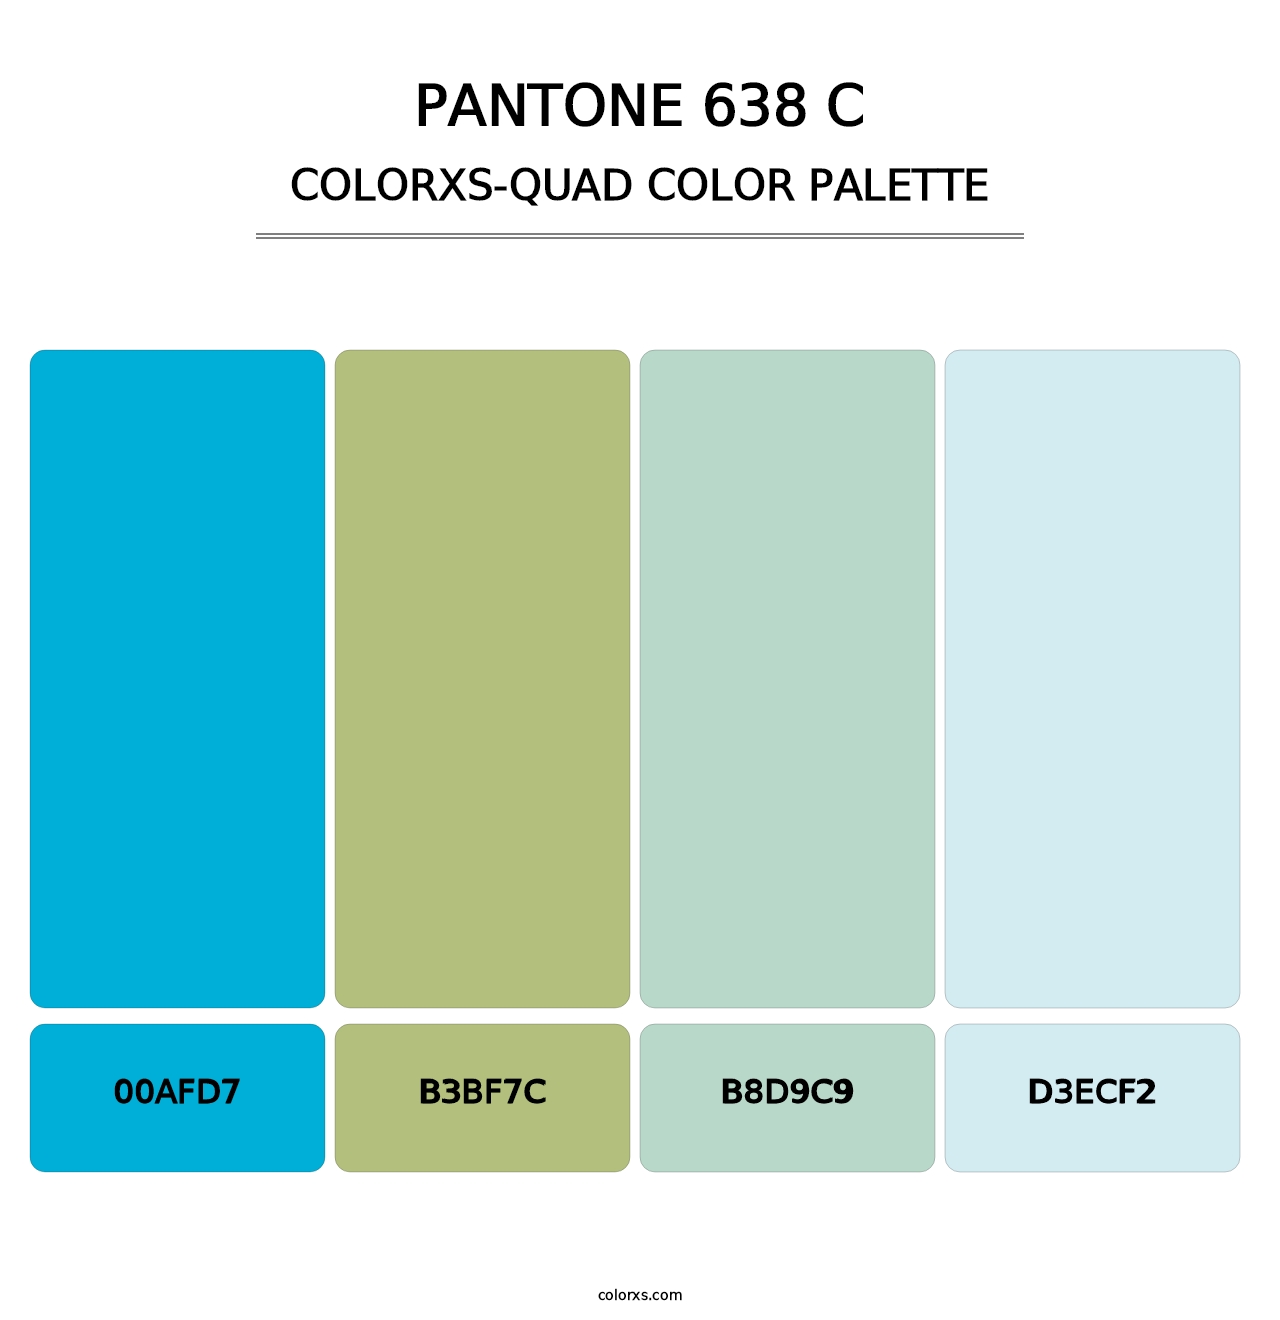 PANTONE 638 C - Colorxs Quad Palette